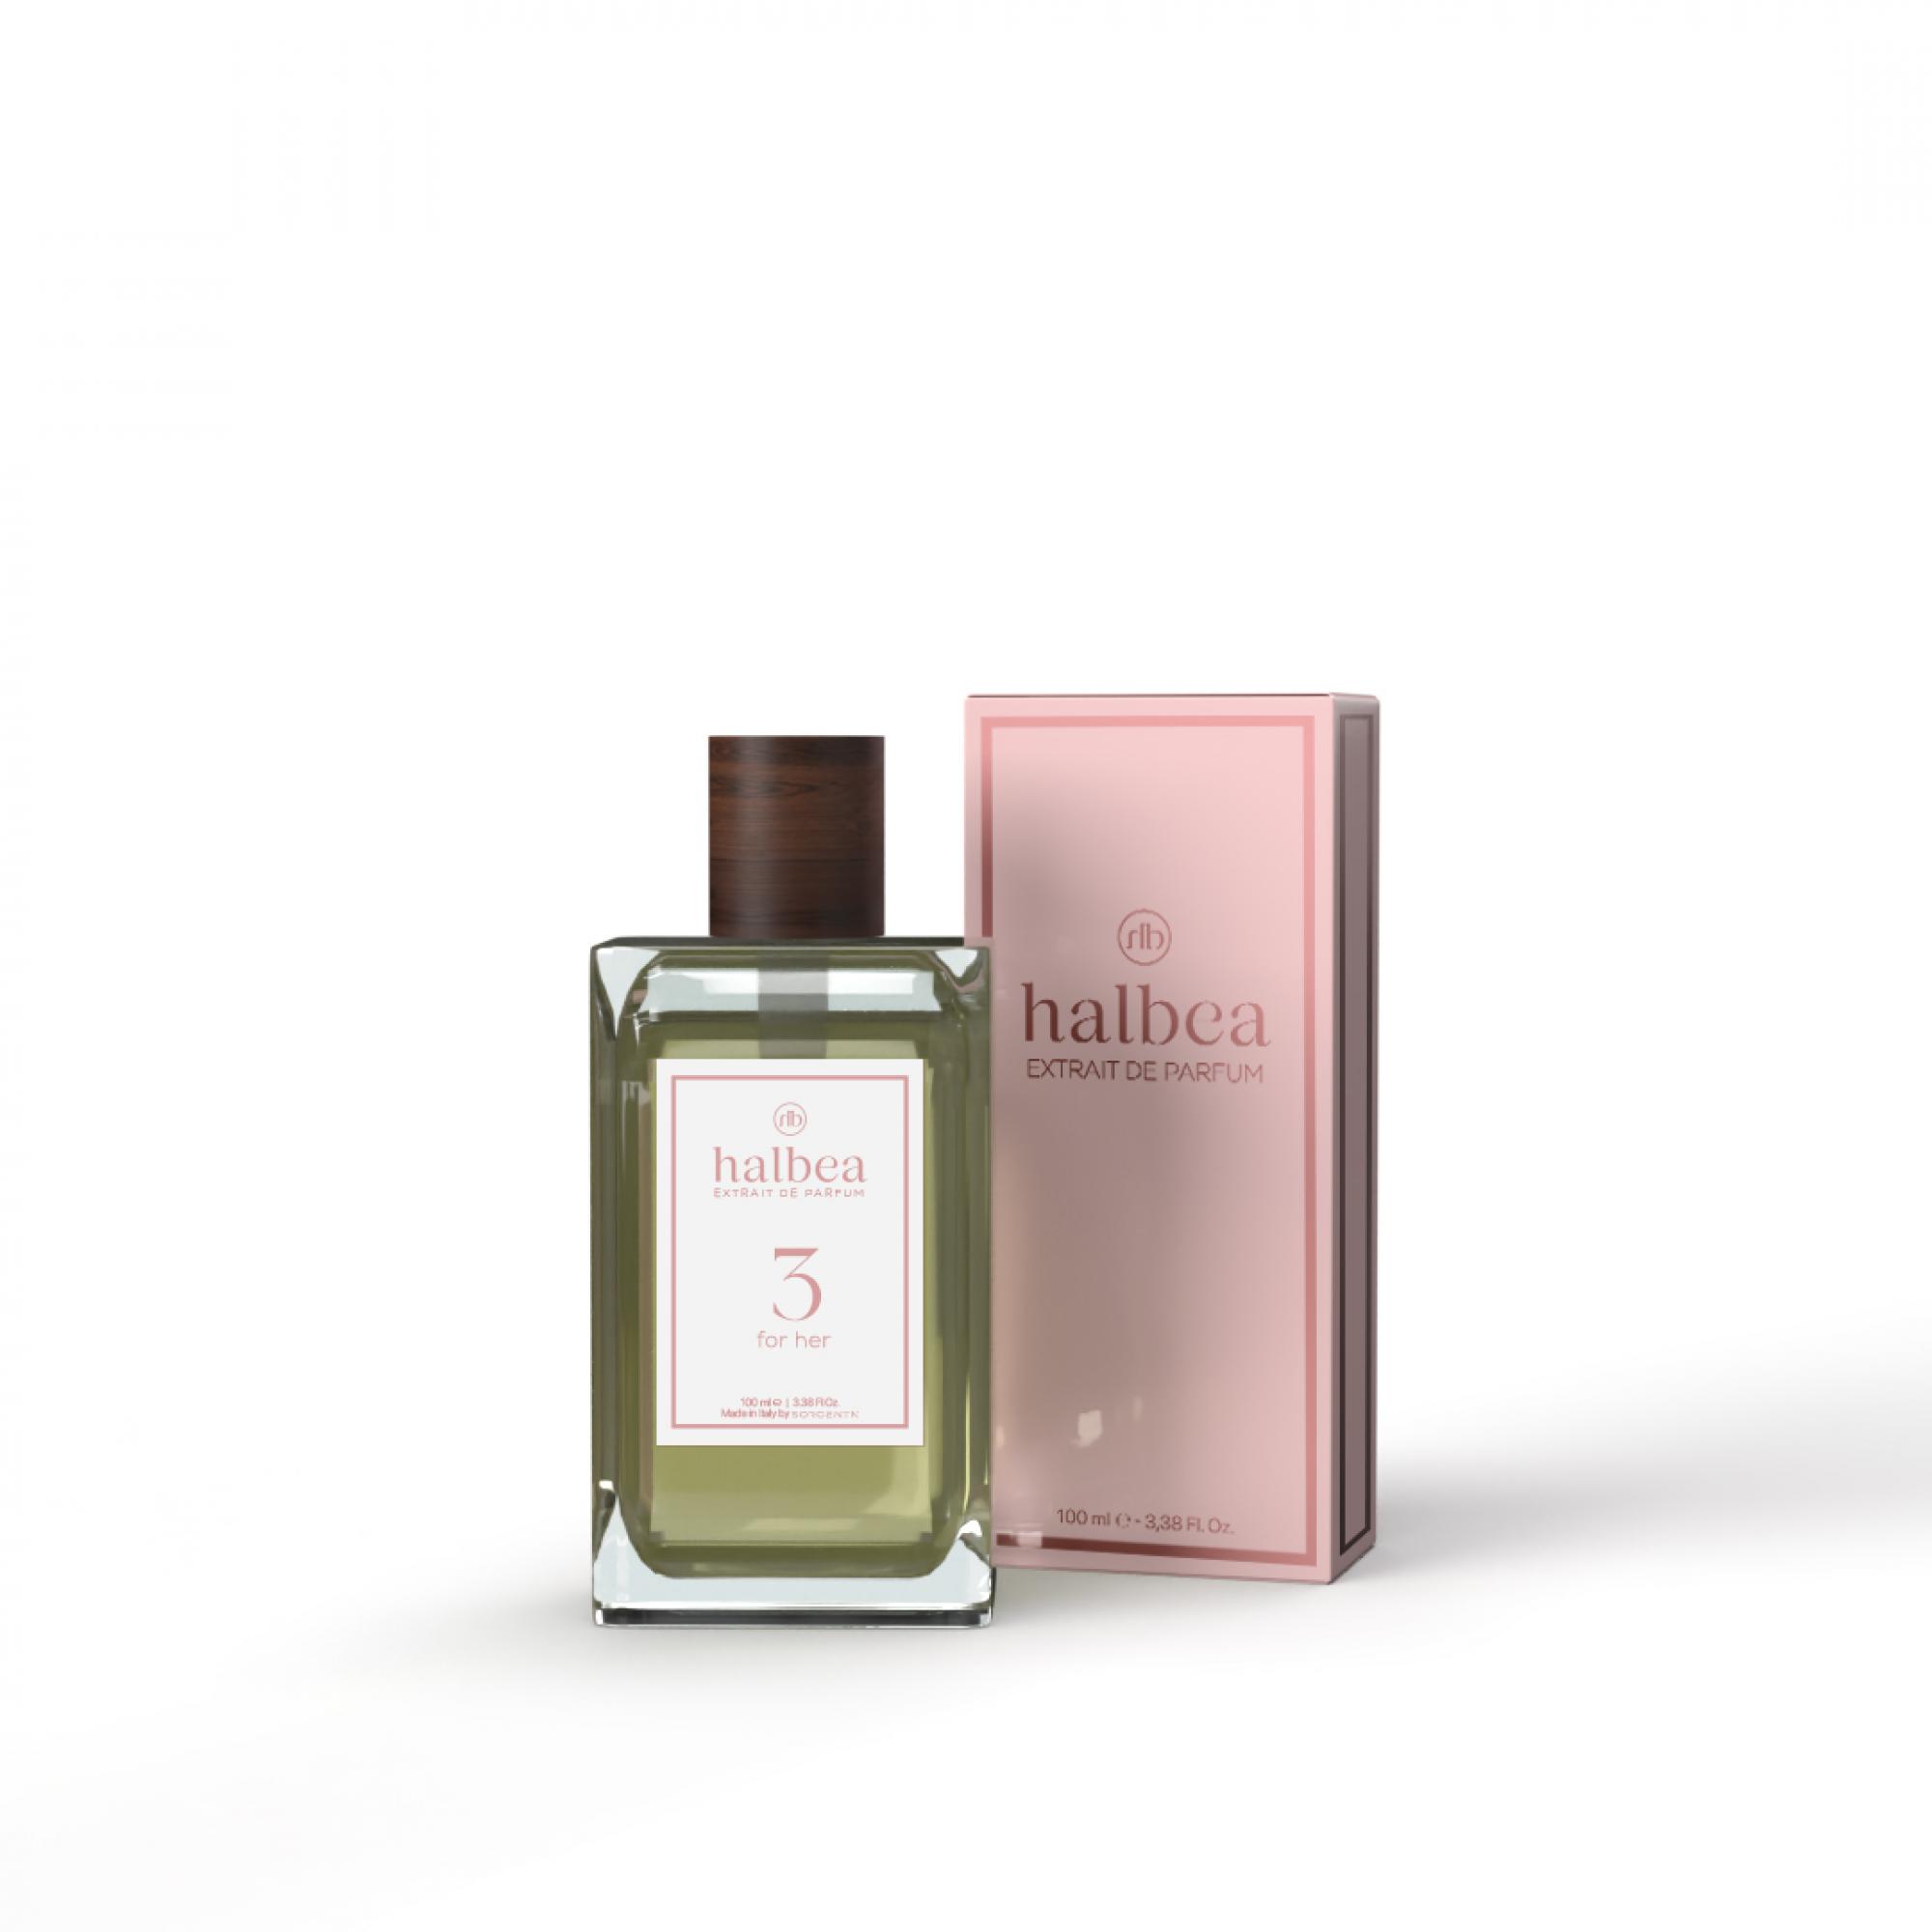 Halbea Parfum Nr. 3 insp. by Gucci Guilty Pour Femme 100ml Sorgenta Duftzwillinge